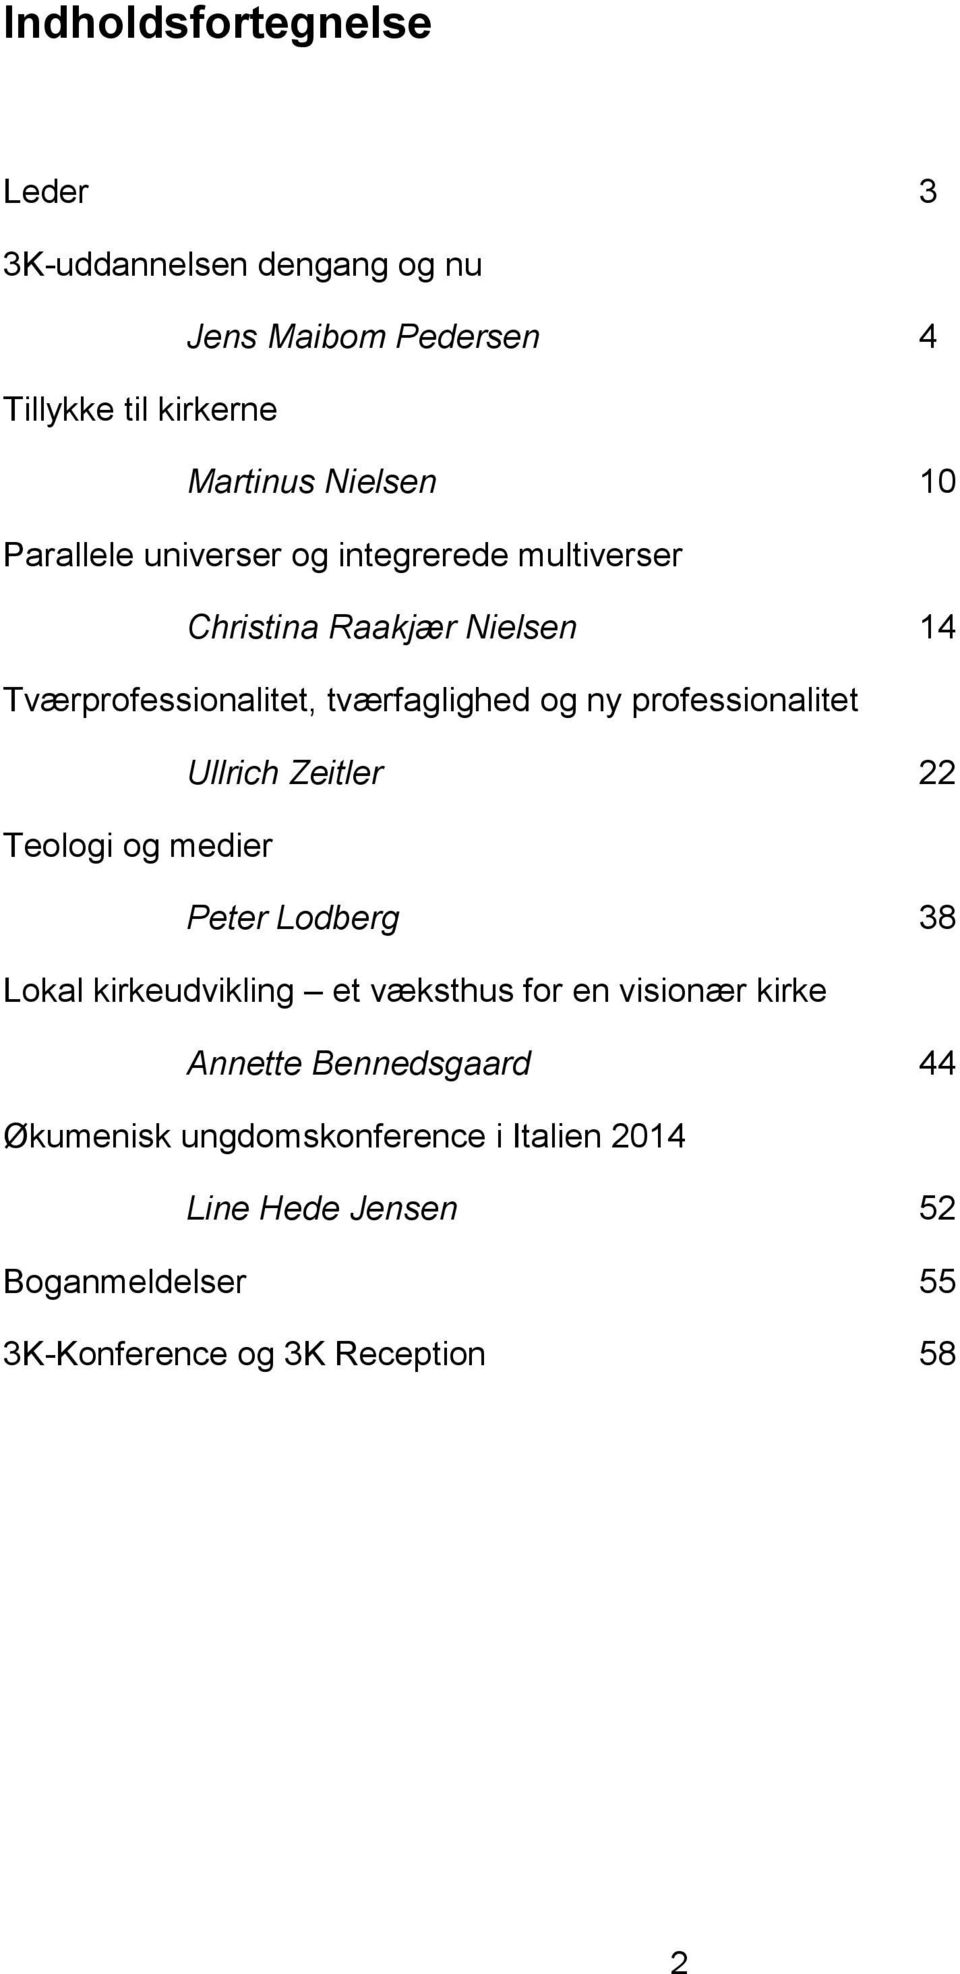 3K Tidsskrift for Kristendom, Kultur Kommunikation PDF download